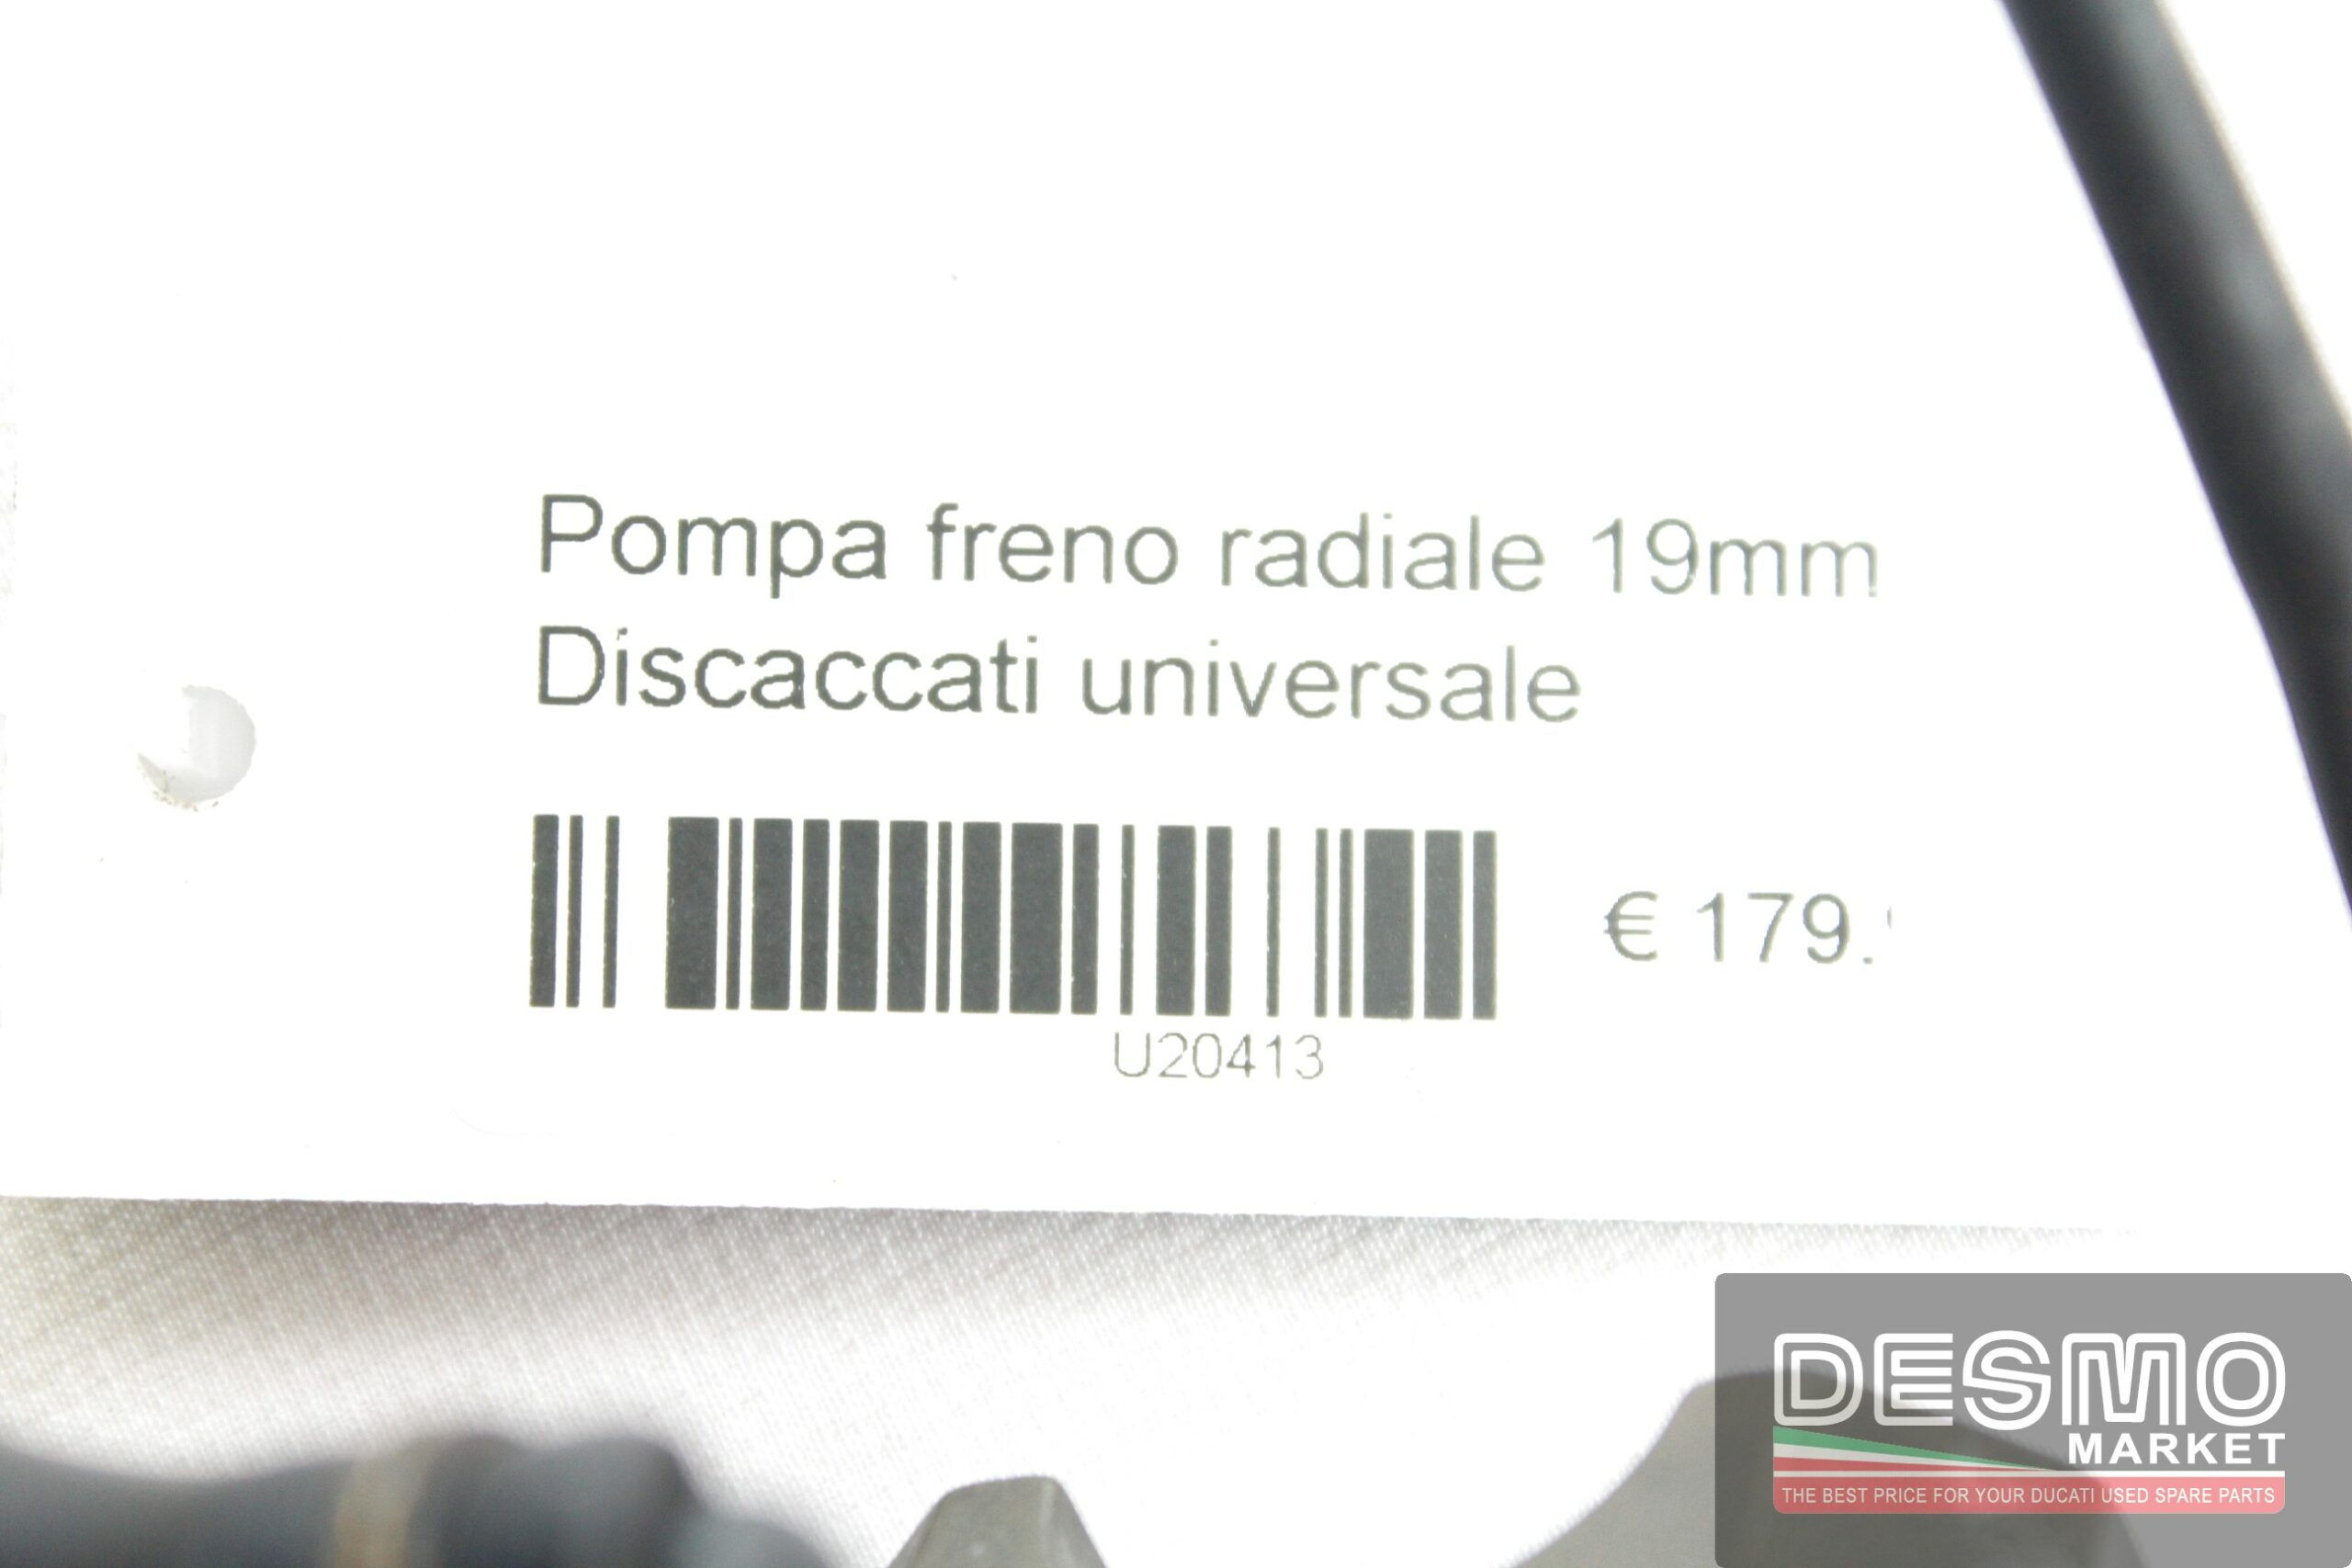 Pompa freno radiale 19mm Discaccati universale